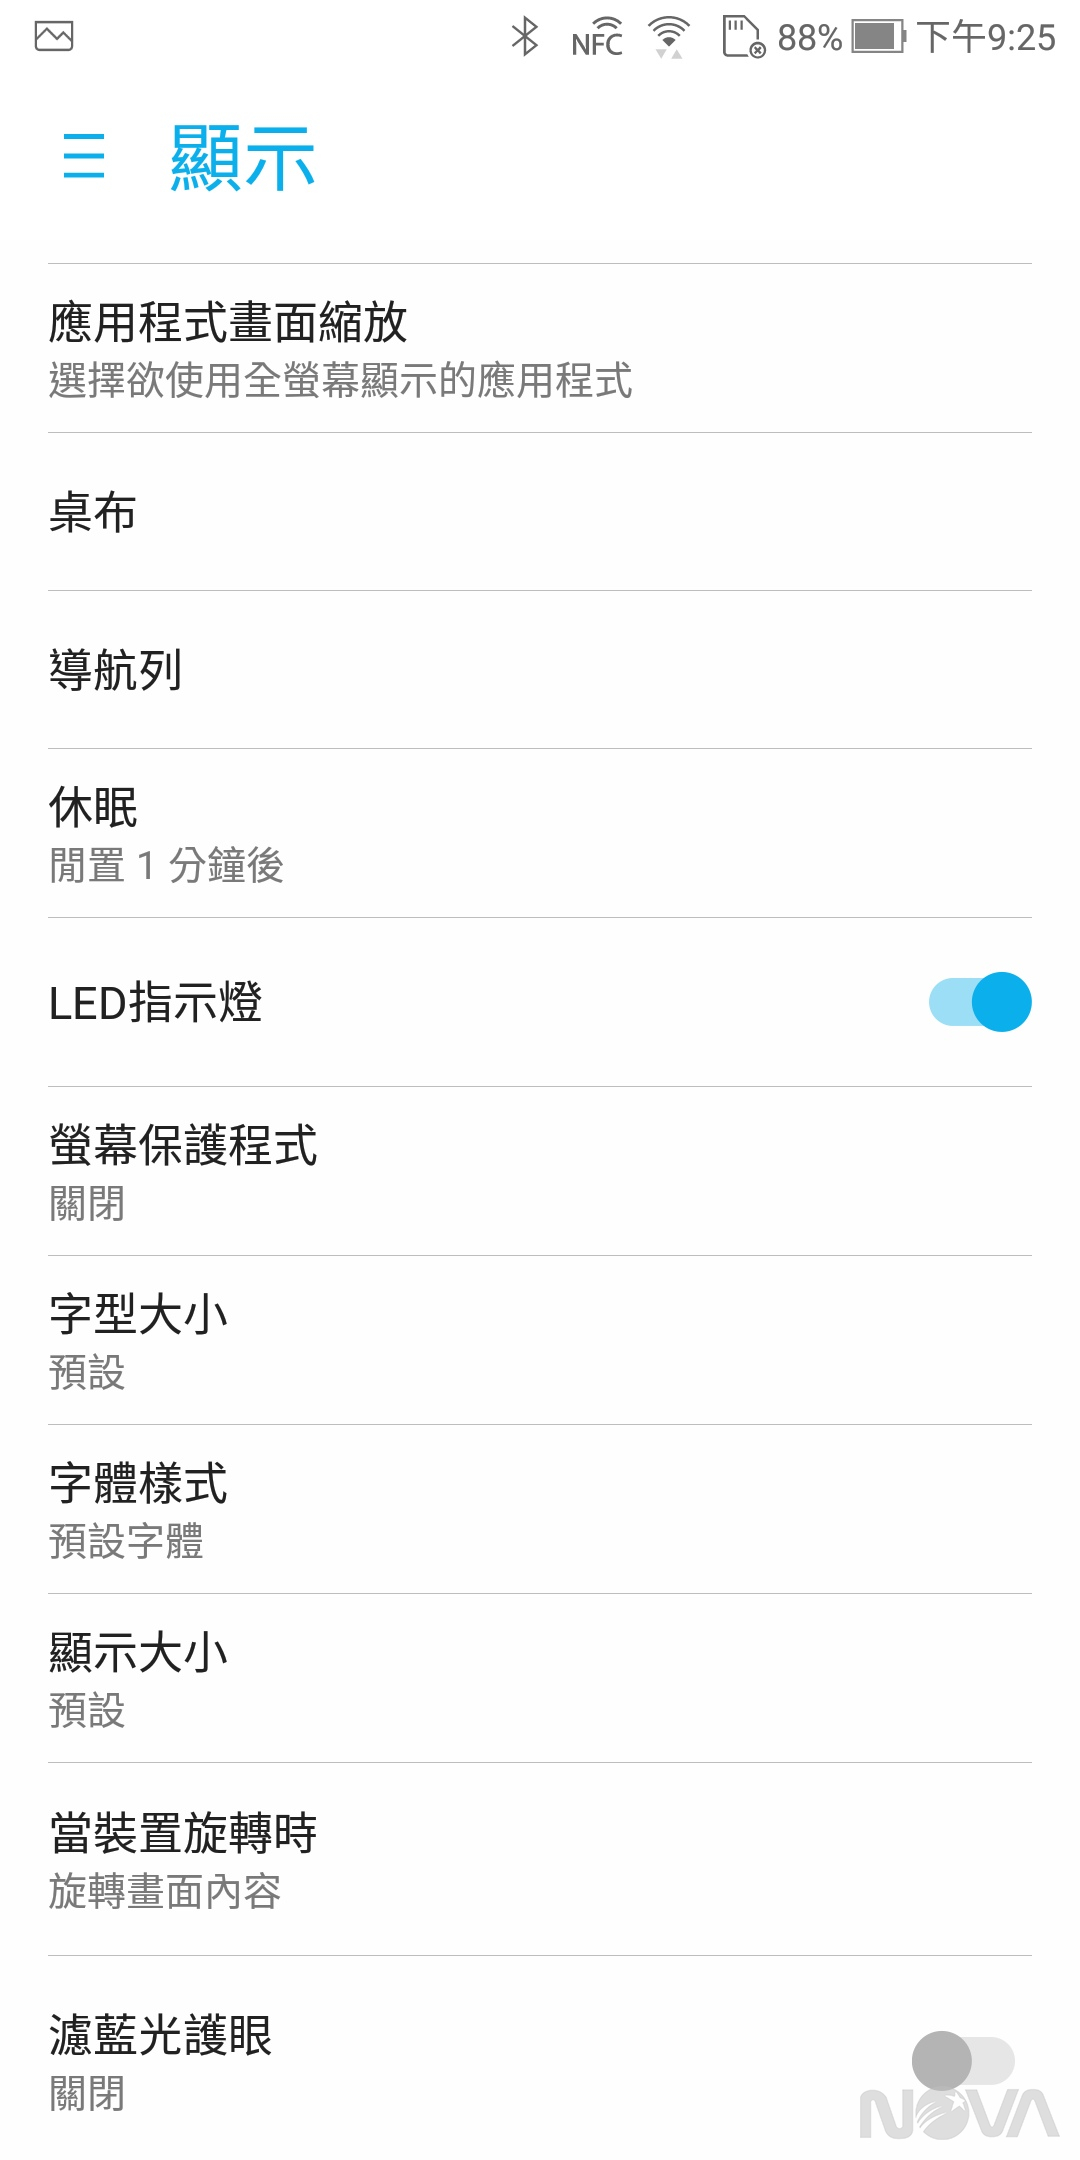 ASUS ZenFone 5Q